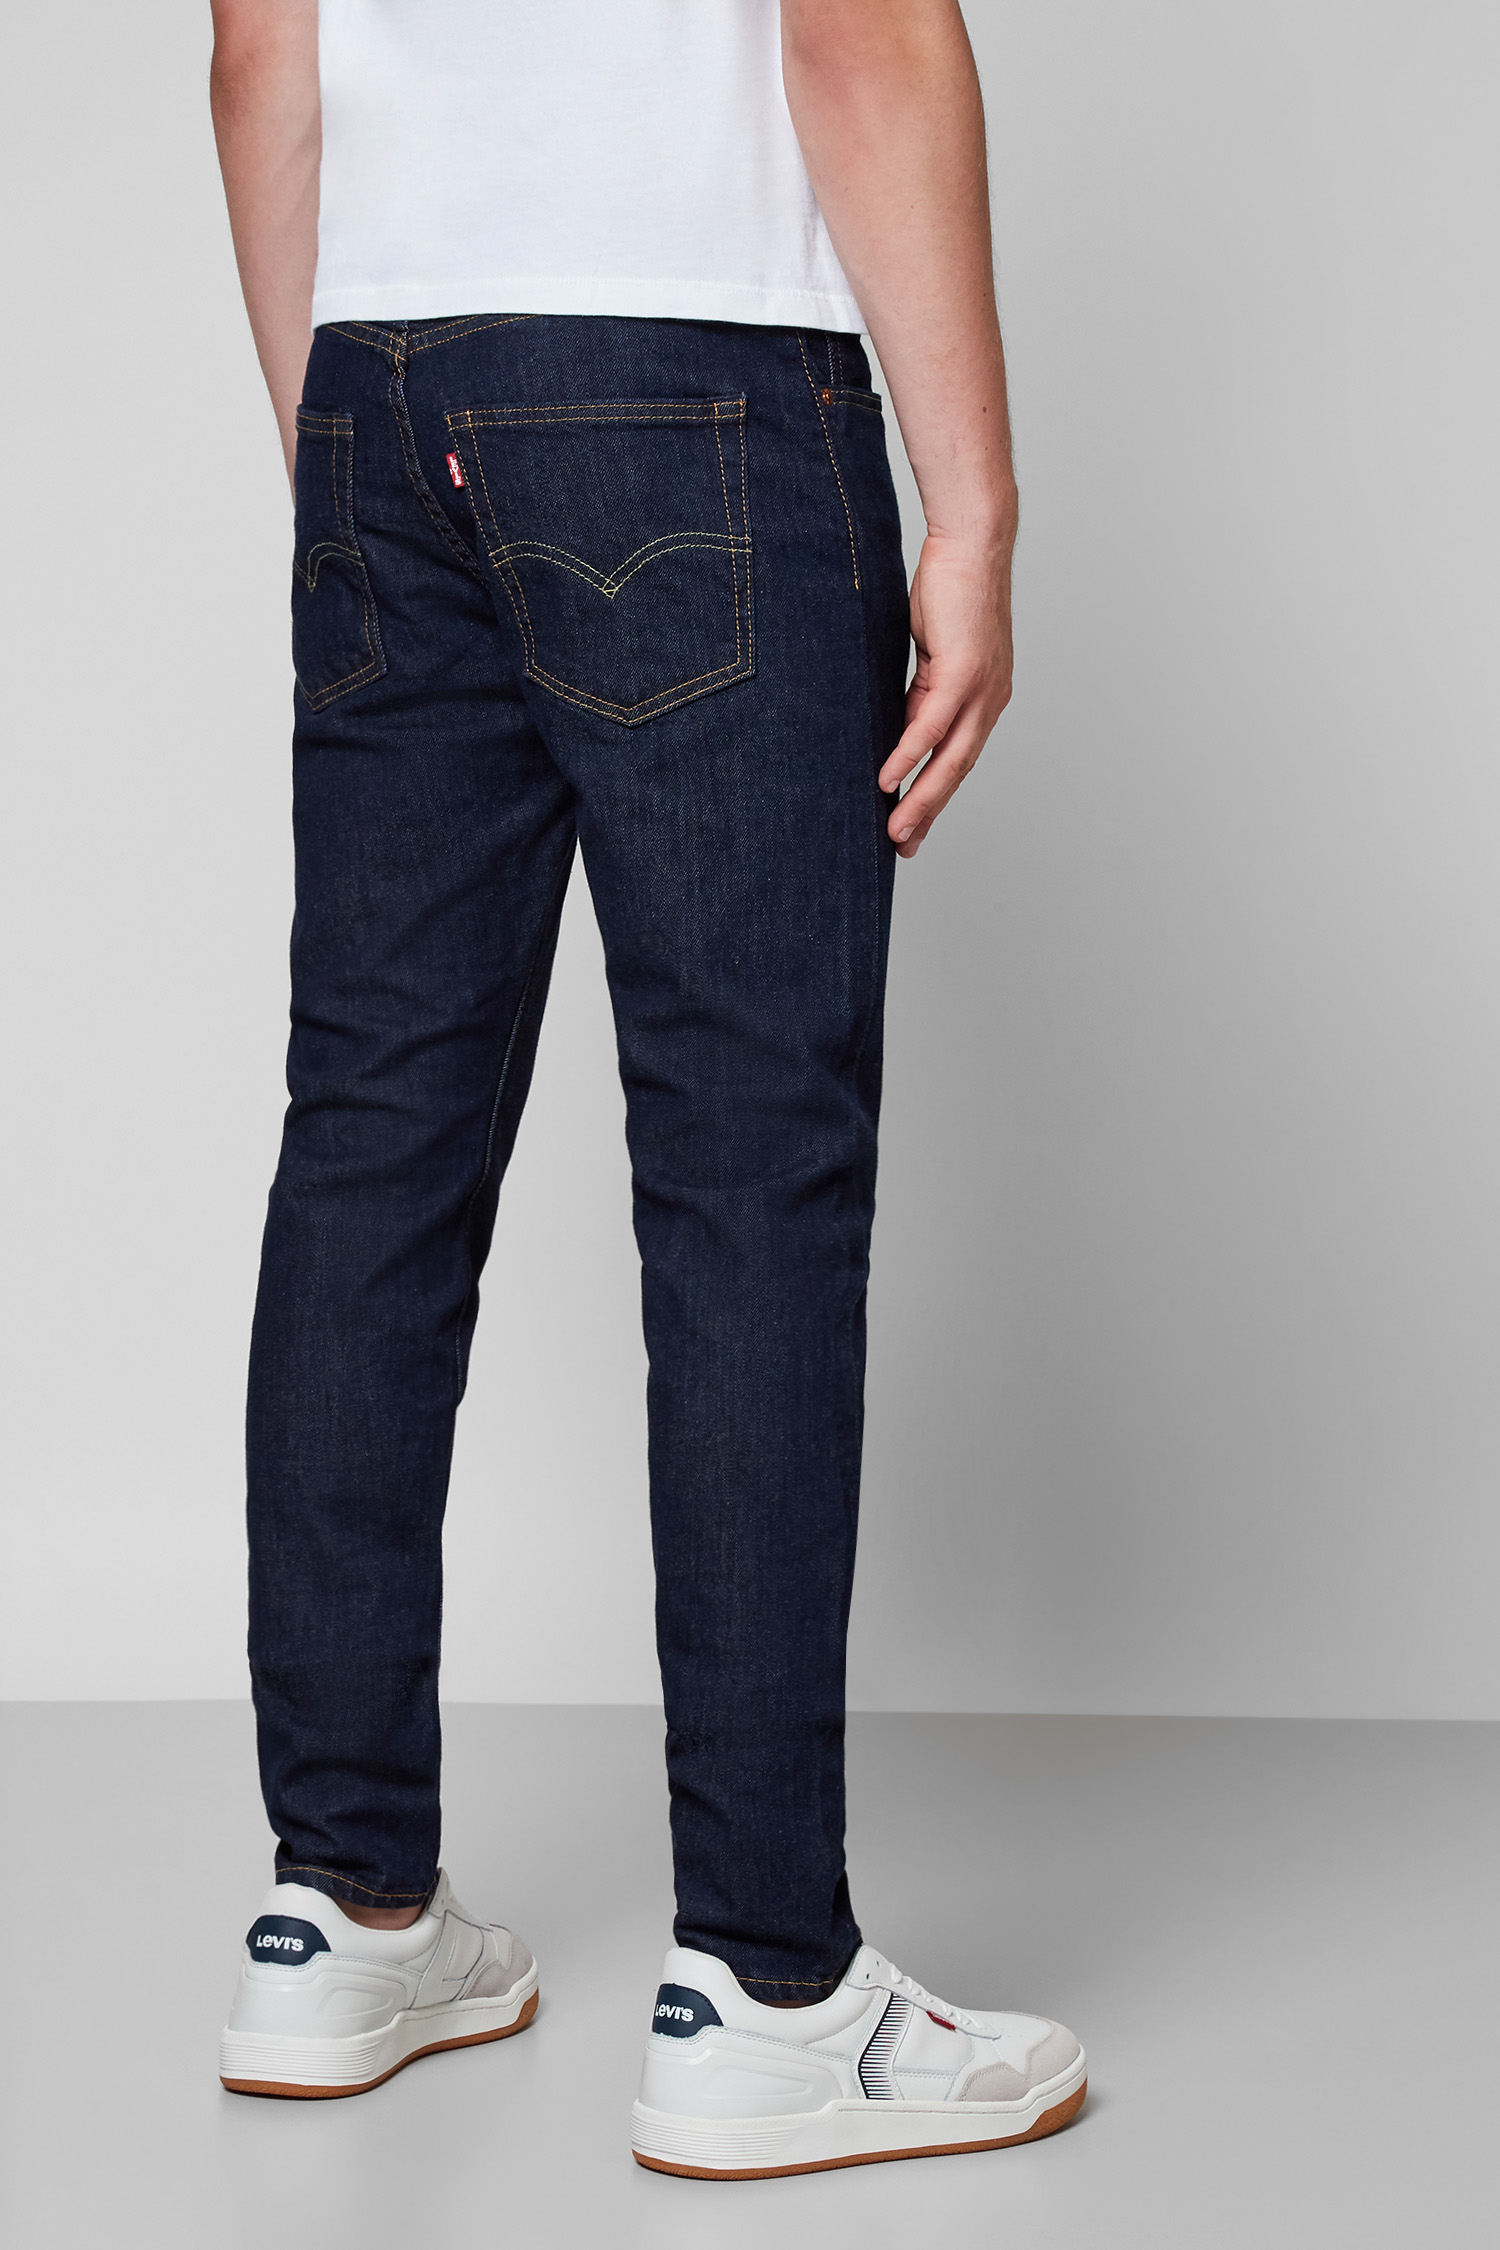 Темно-синие джинсы для парней 512™ Slim Taper Levi’s® 28833;0280